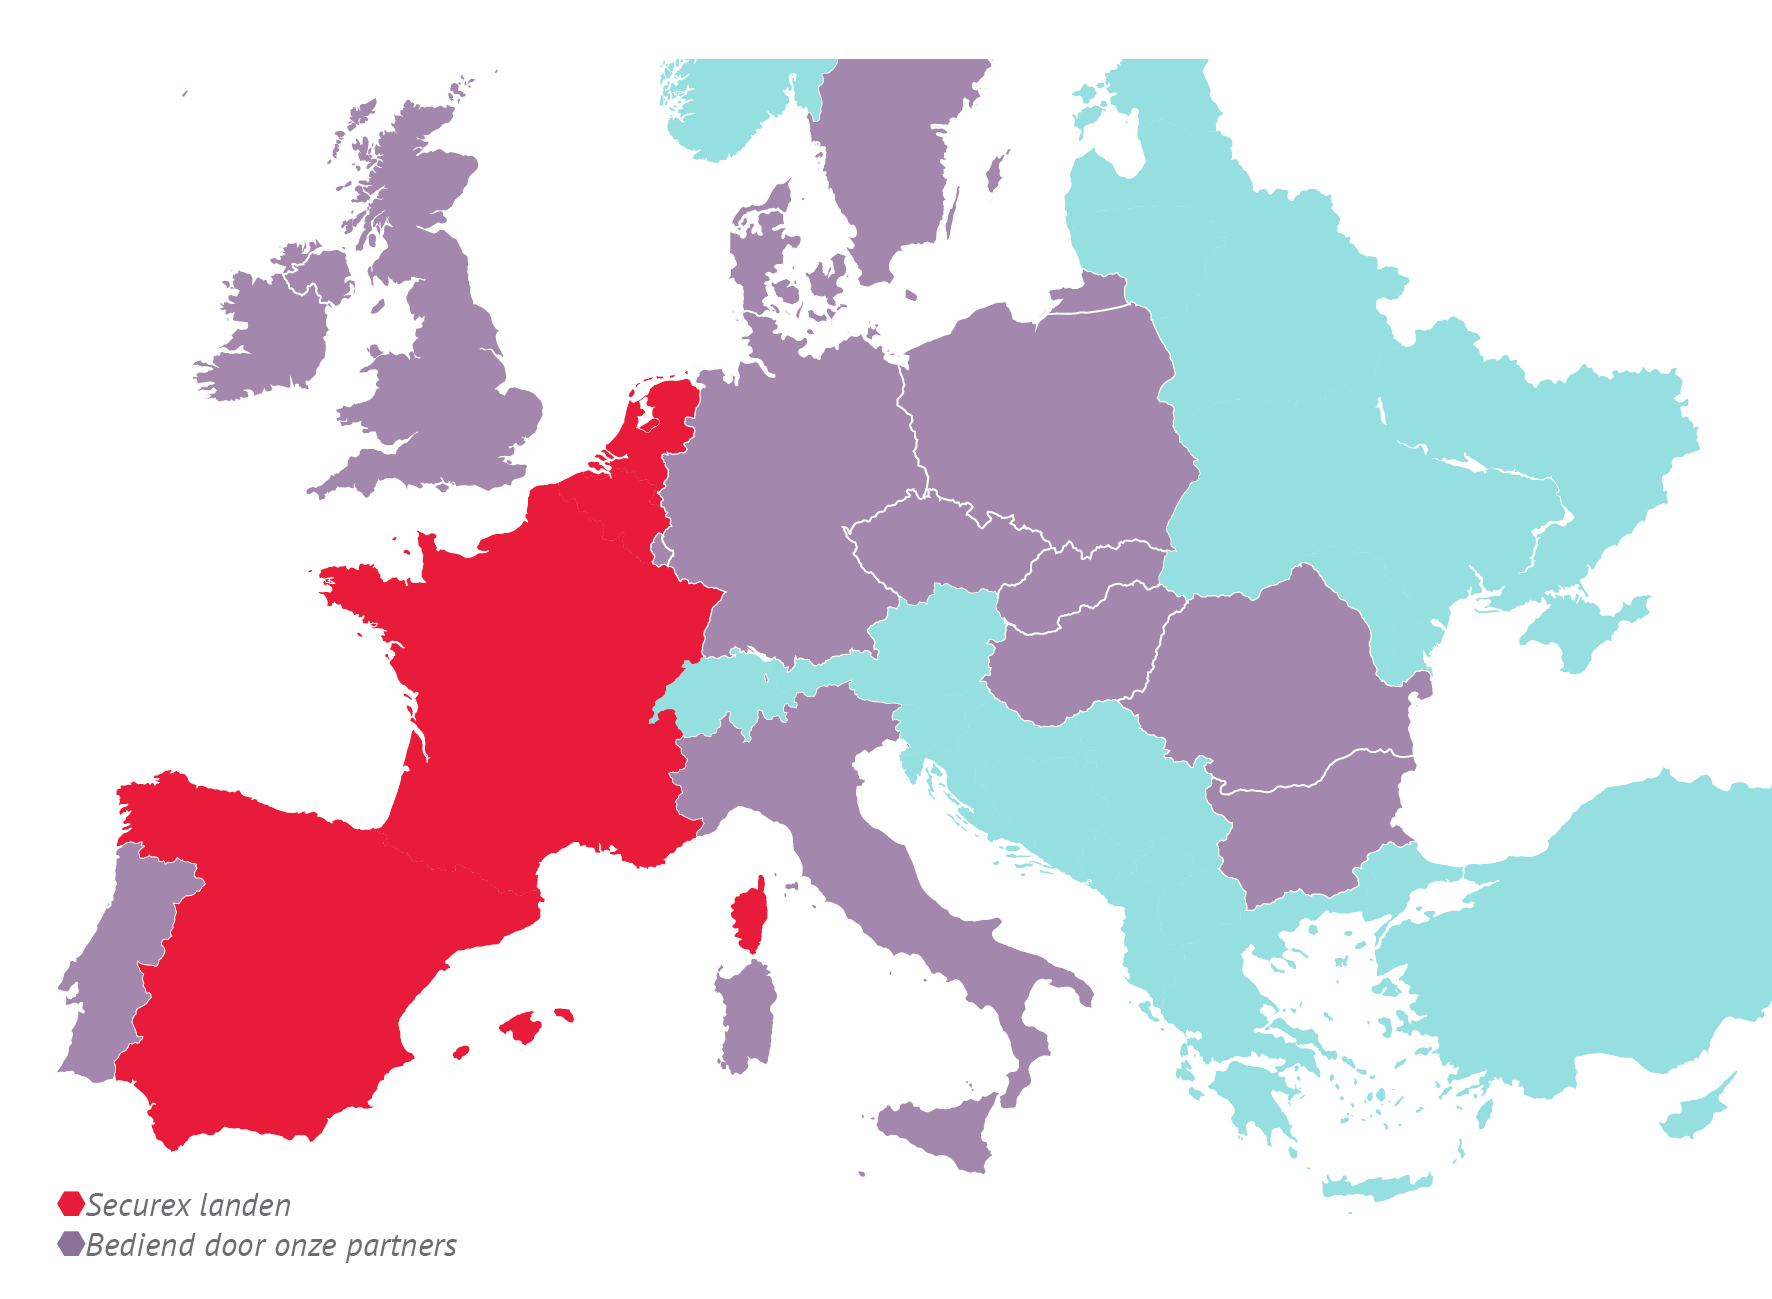 Kaart van Europa toont alle landen waar Securex actief is